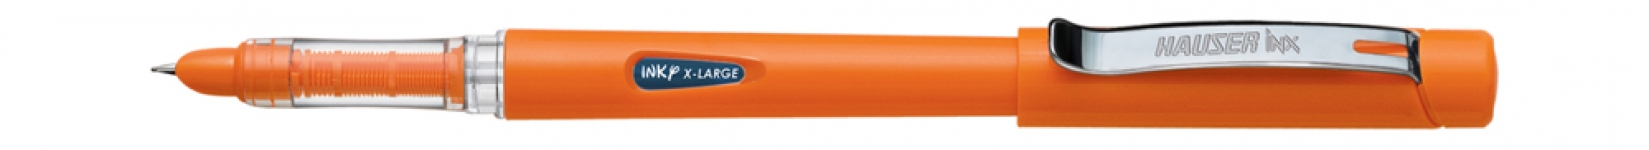 Перьевая ручка Hauser NEON, пластик, оранжевая